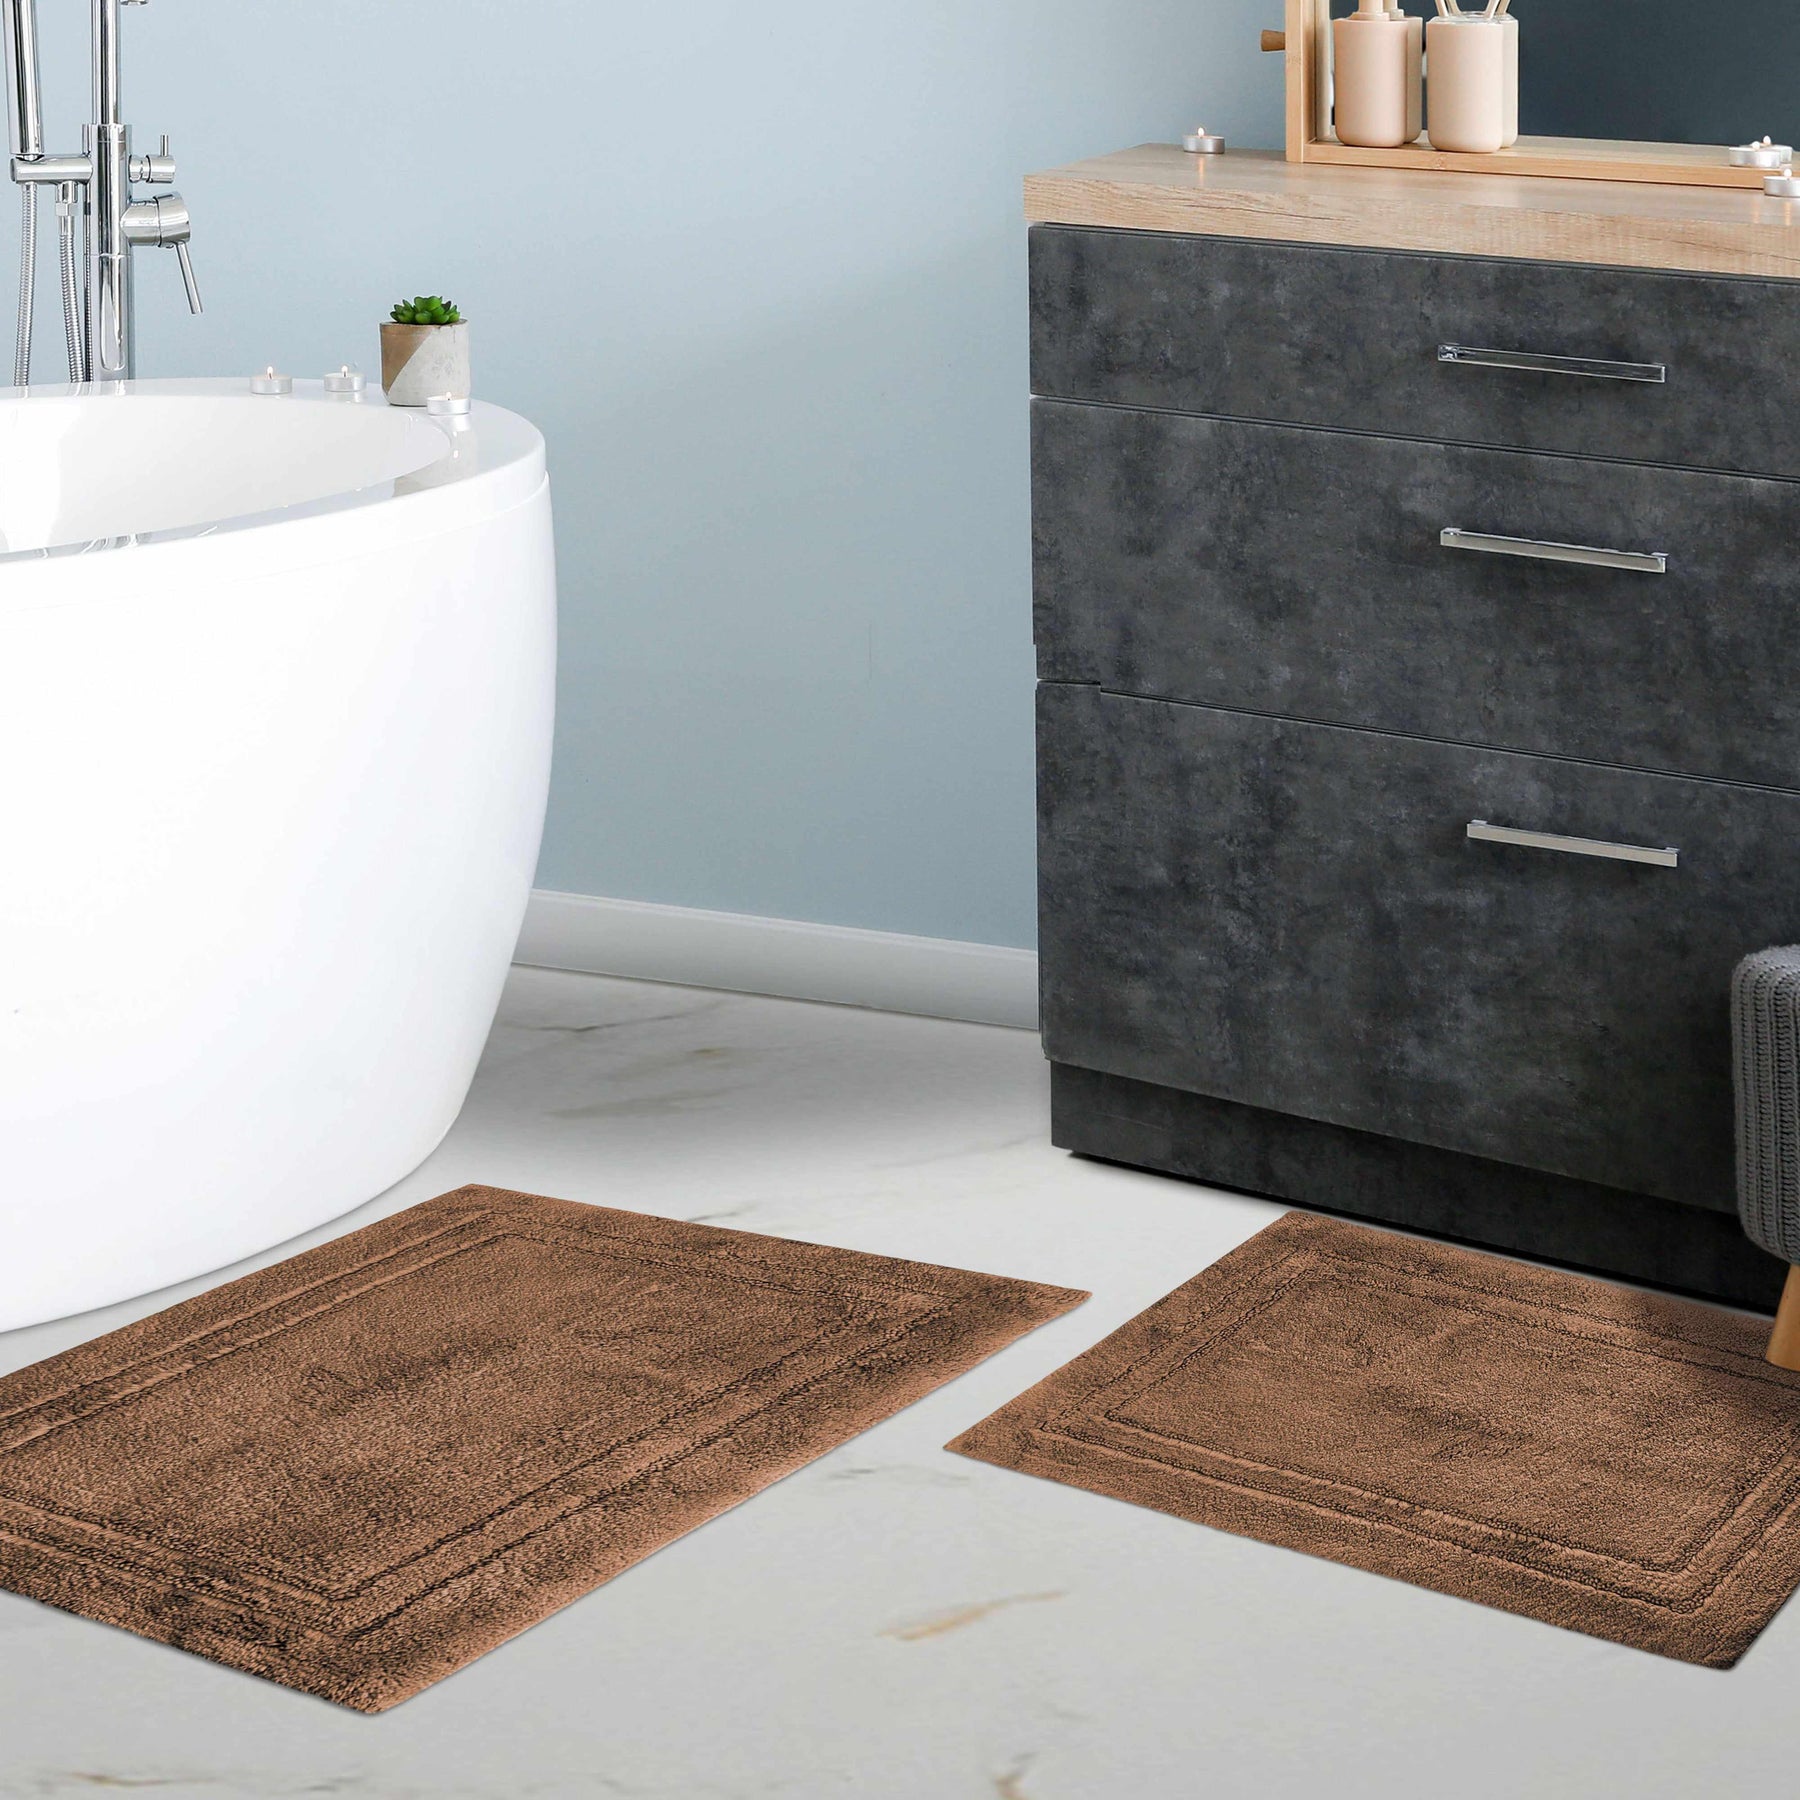 Super Absorbent Floor Mat Review 2021- Absorbent Bath Mat 